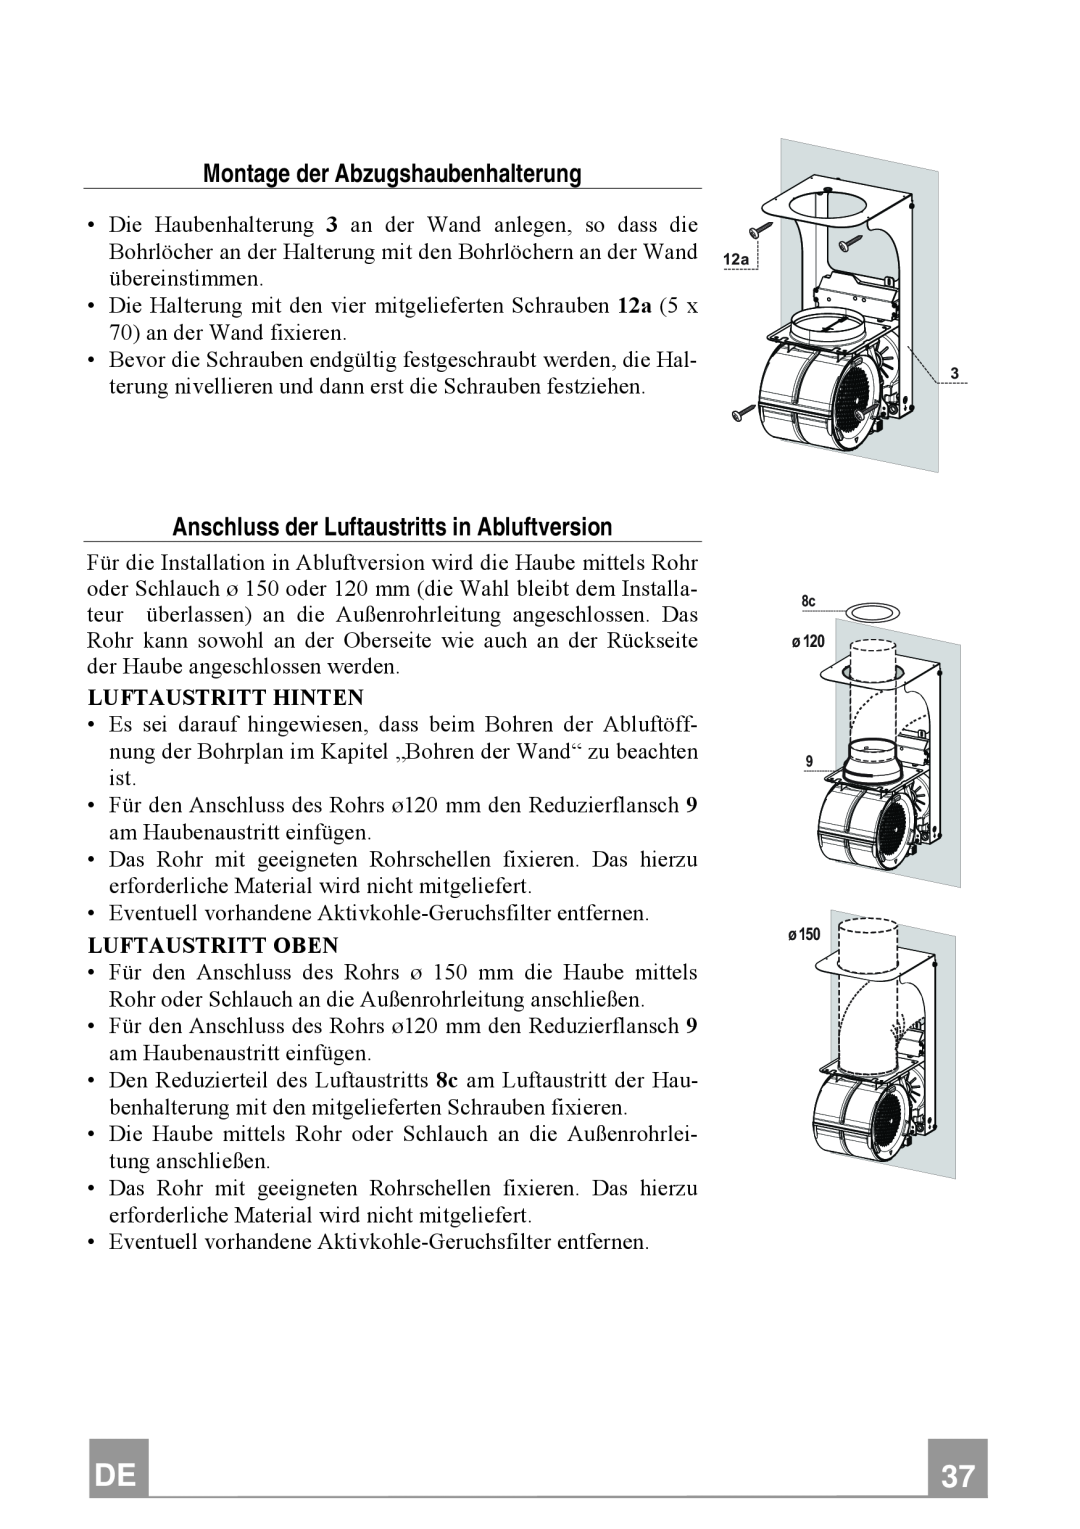 Franke Consumer Products FTU 3807 W manual Montage der Abzugshaubenhalterung, Anschluss der Luftaustritts in Abluftversion 